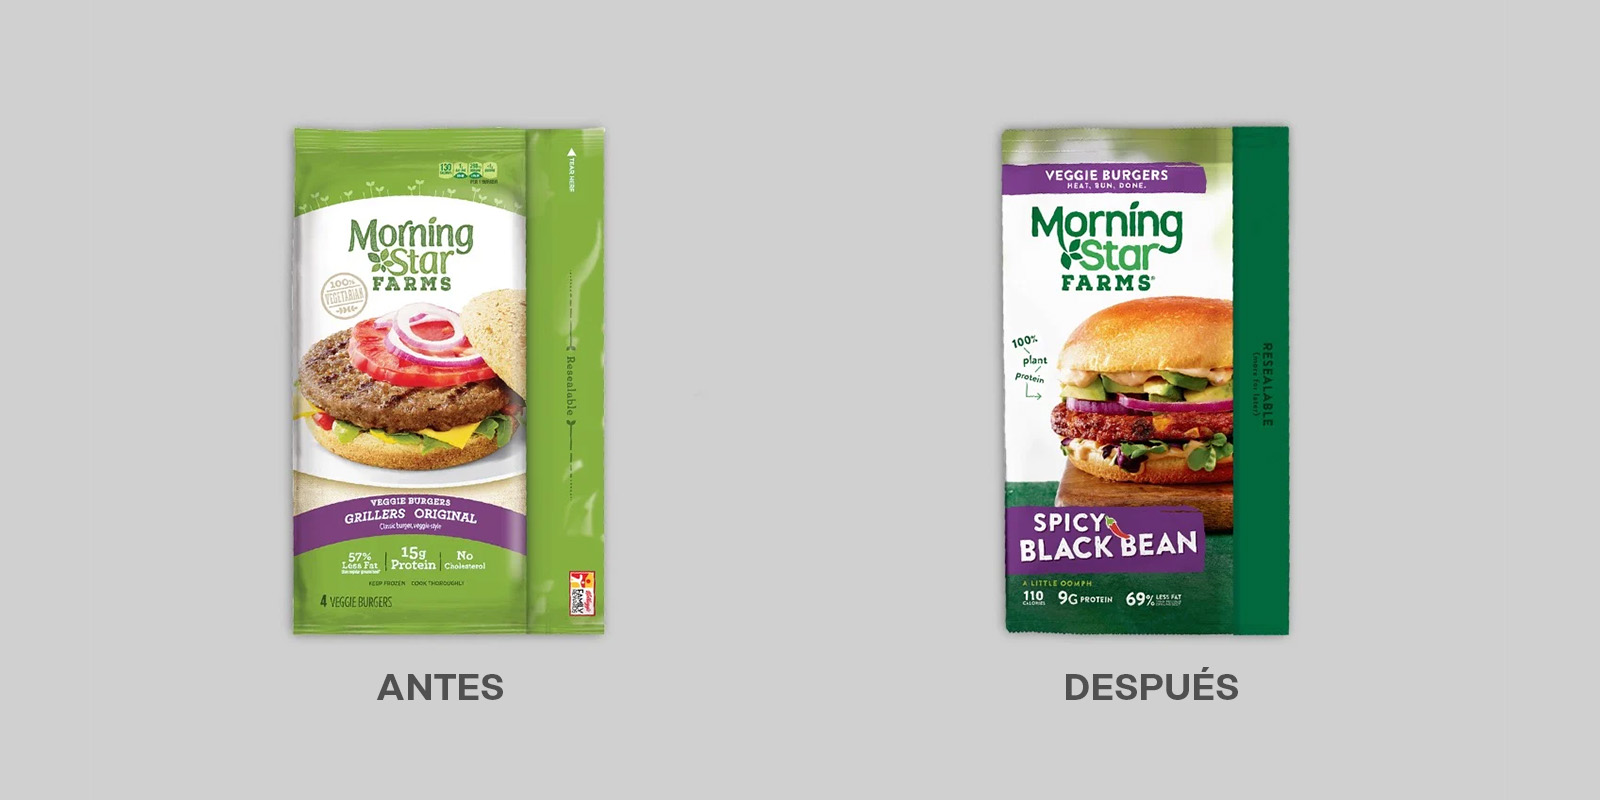 Antes y después del rediseño de logo y packaging de las hamburguesas vegetarianas Morning Star Farms. El nuevo envase muestra una imagen más apetitosa de una hamburguesa completa y una mención clara del sabor.